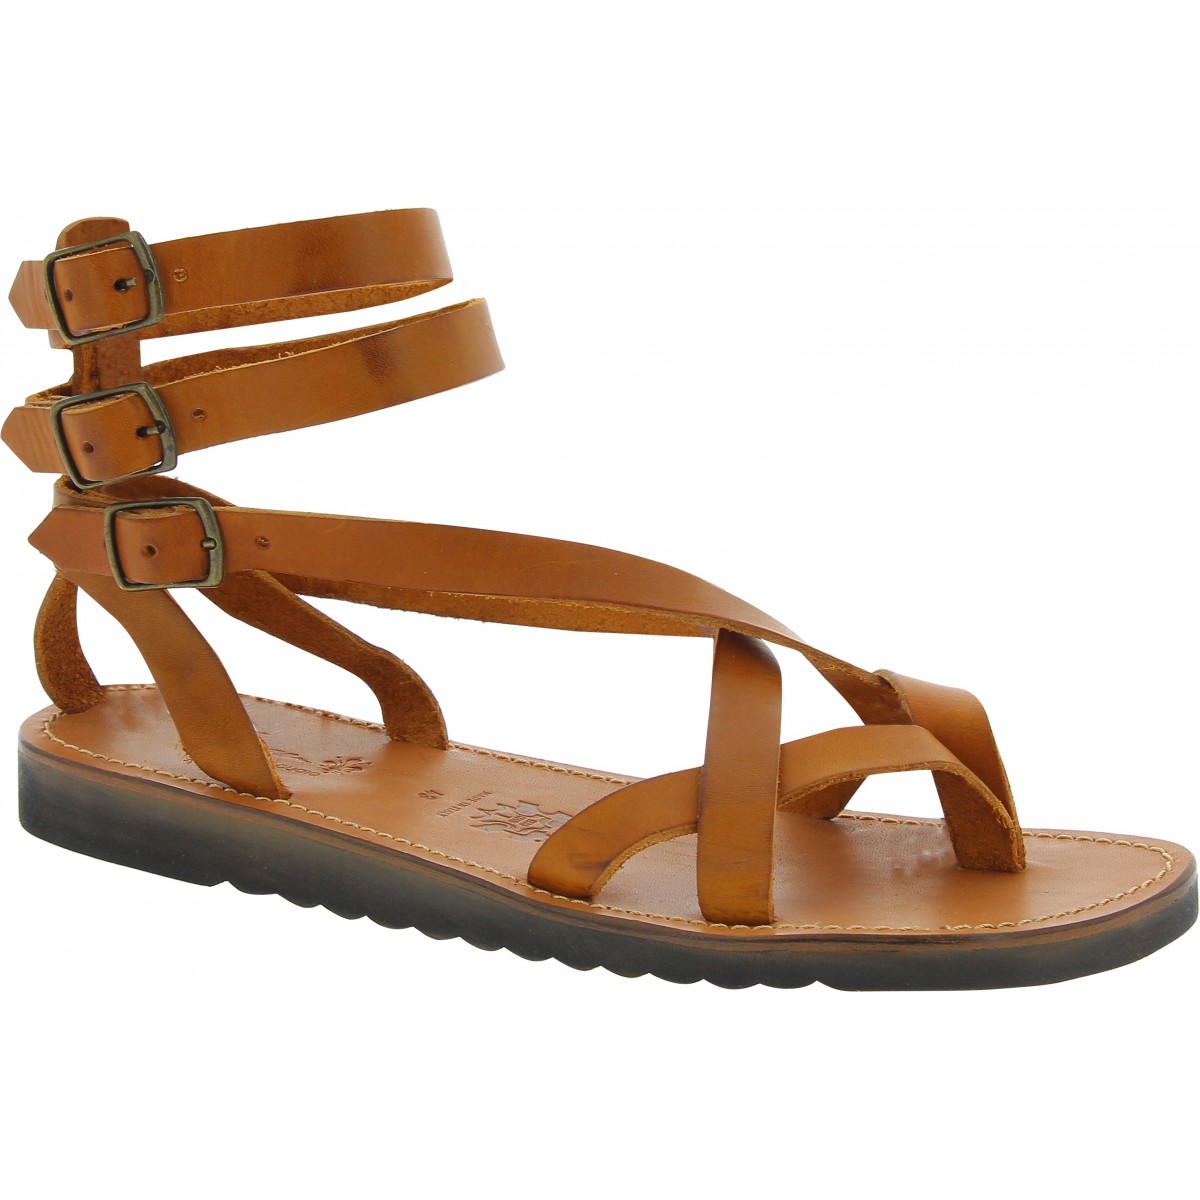 Brown Leather Gladiator Sandals - Sandal Design